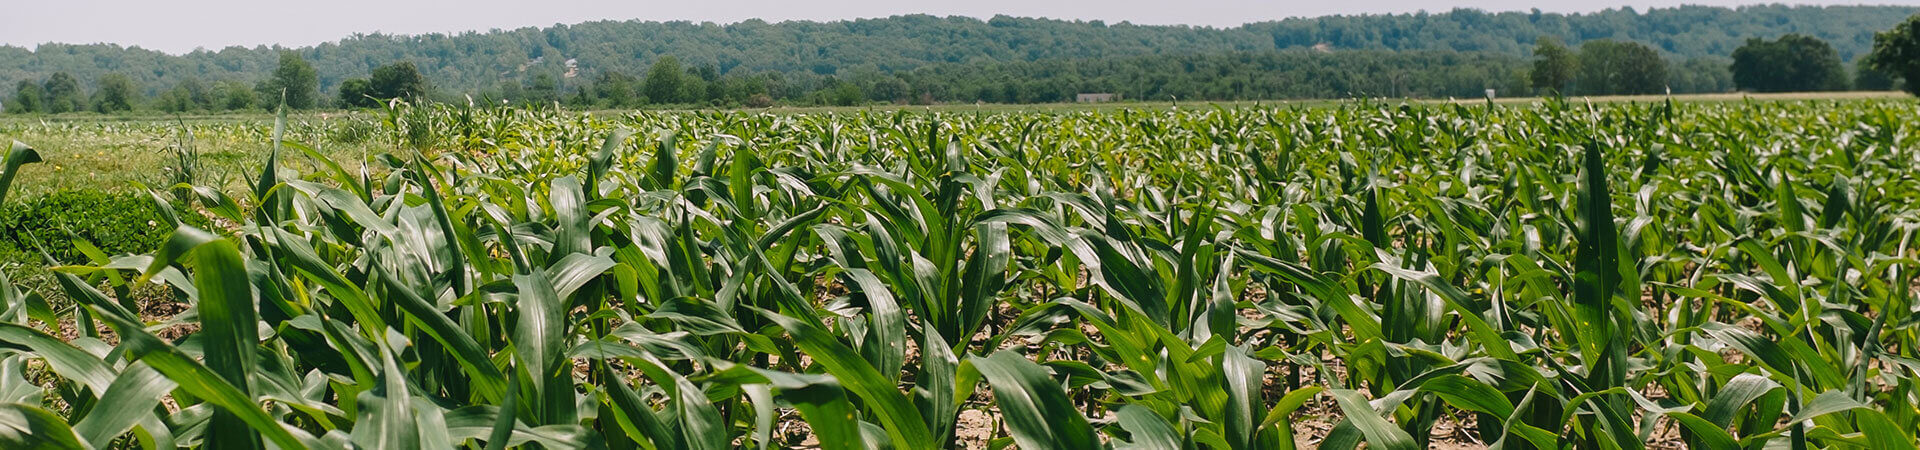 Field of corn.